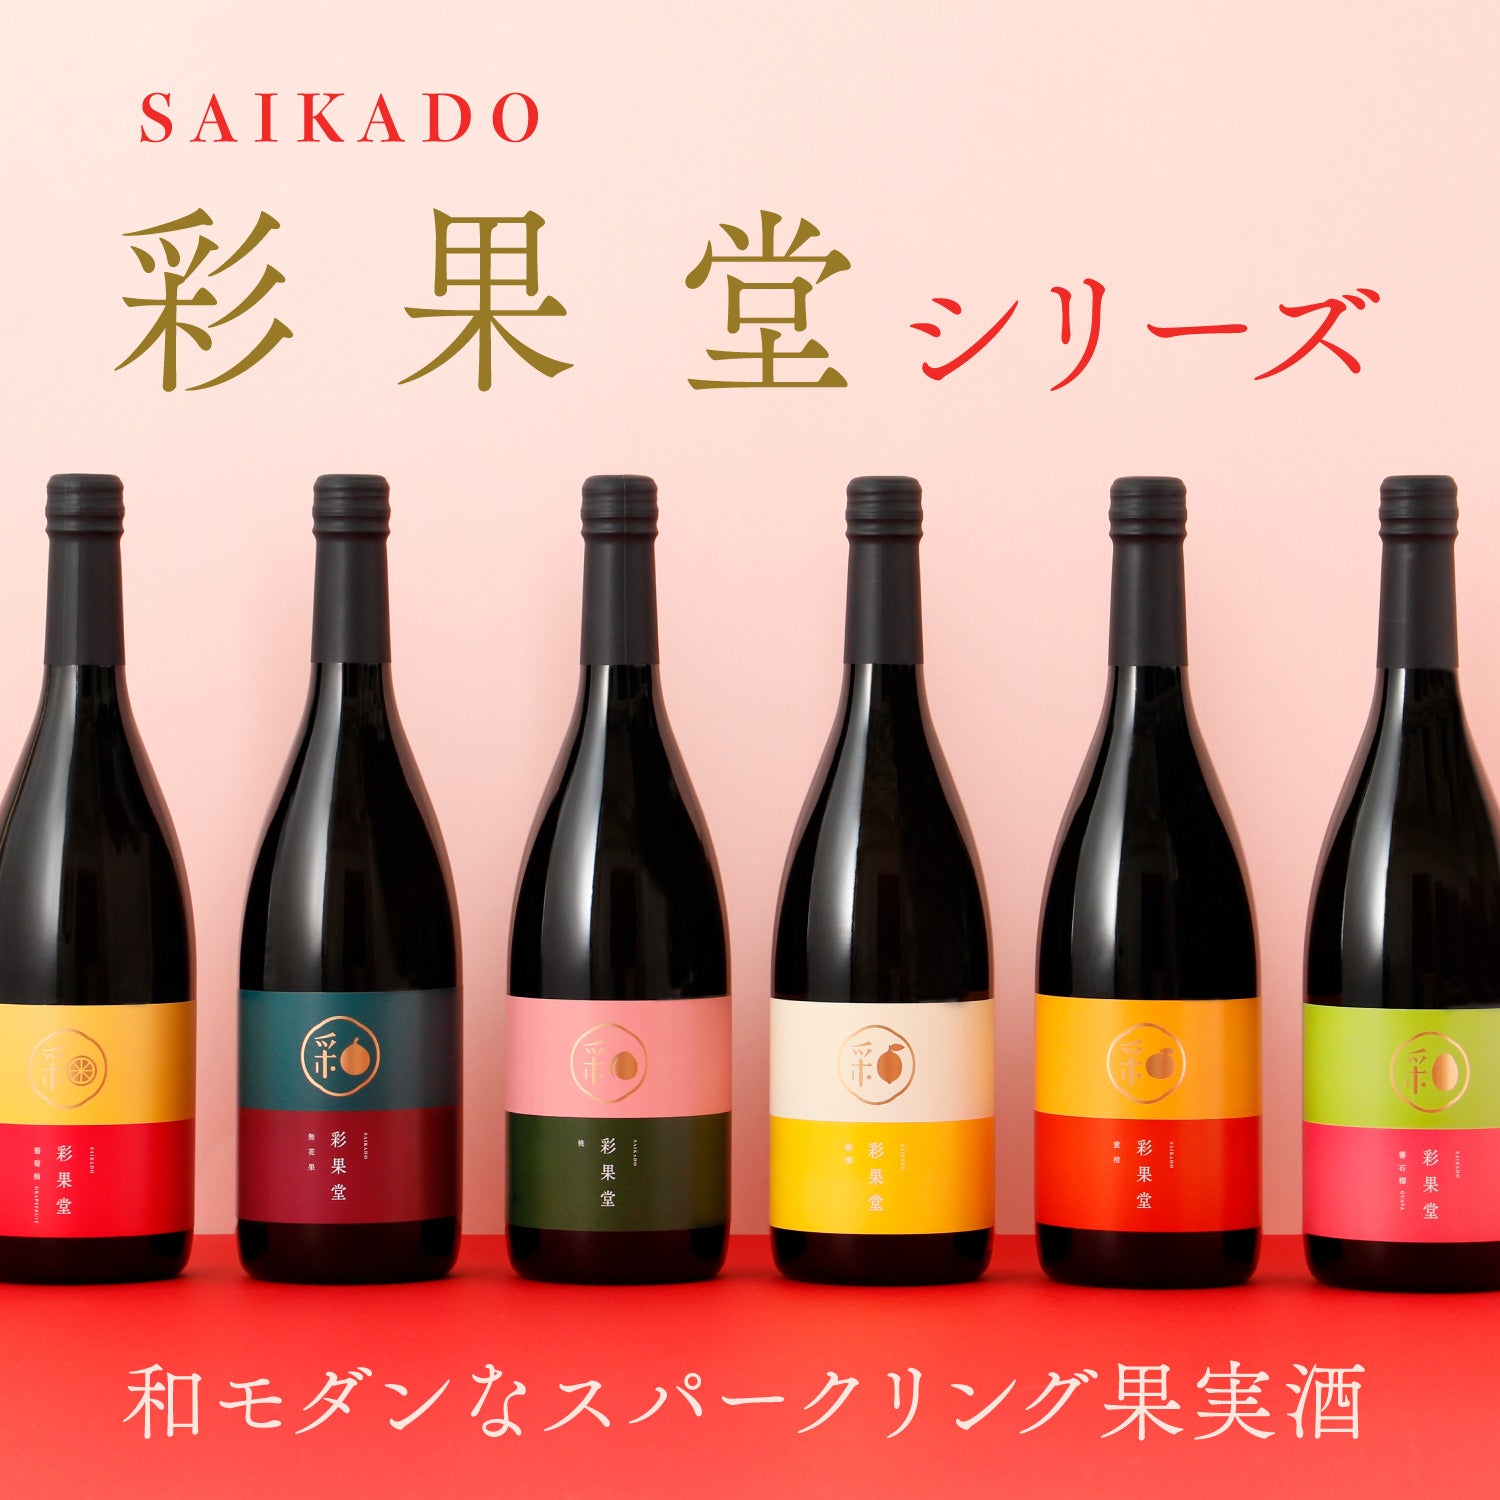 和モダンなスパークリング果実酒「彩果堂 -SAIKADO-」シリーズ